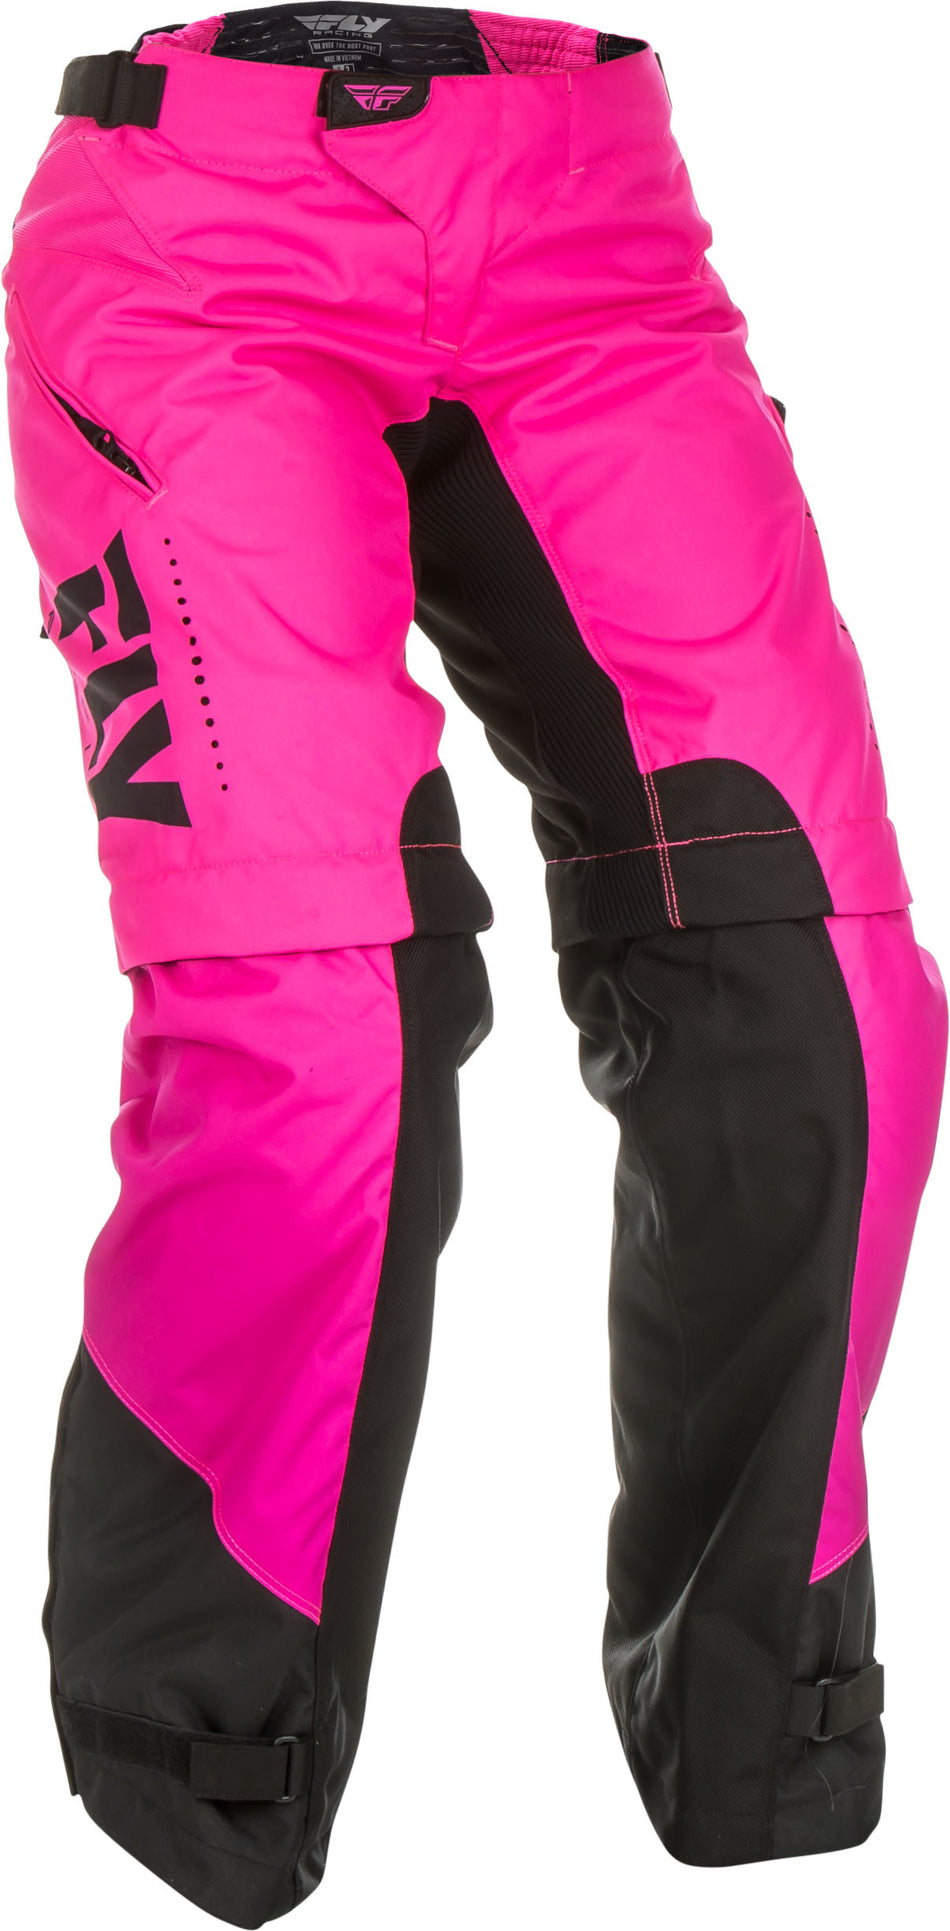 FLY RACING Women's Over Boot Pants Neon Pink/Black Sz 03/04 372-65805